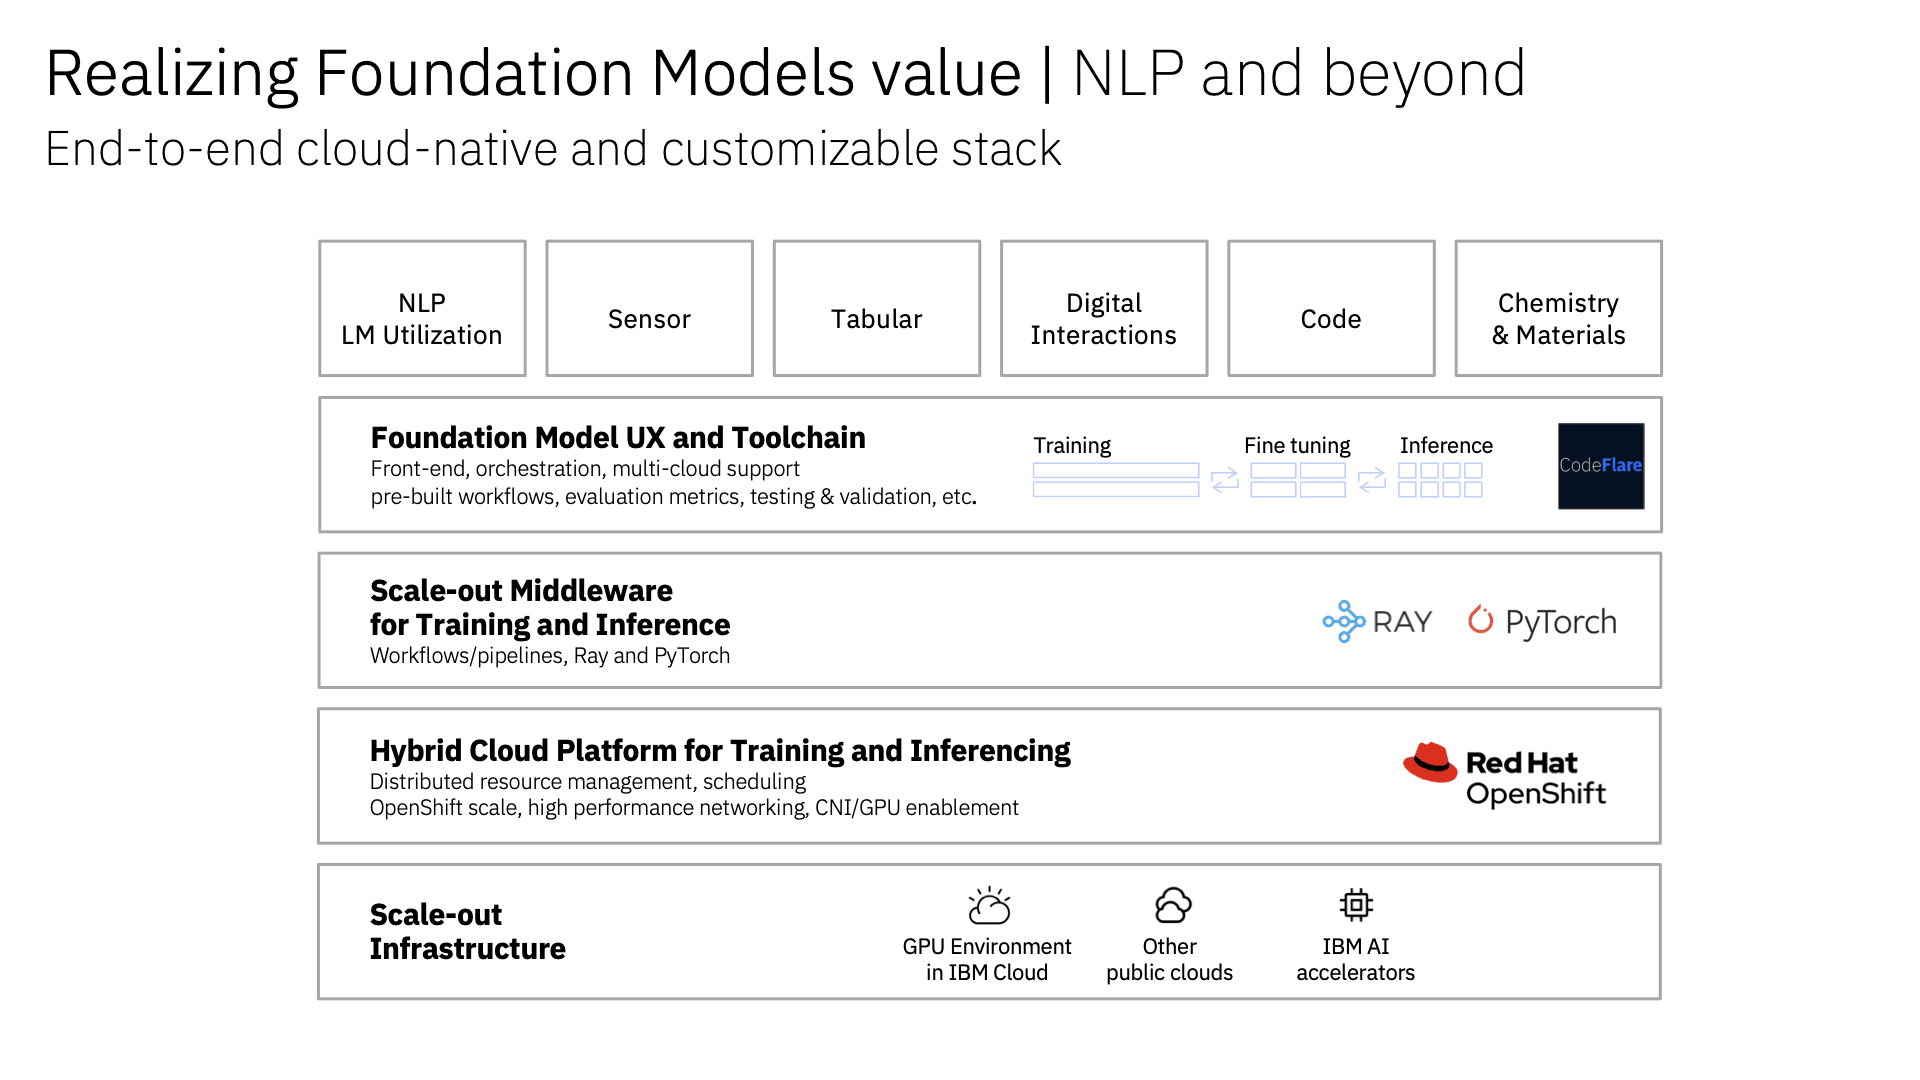 Foundation model full stack